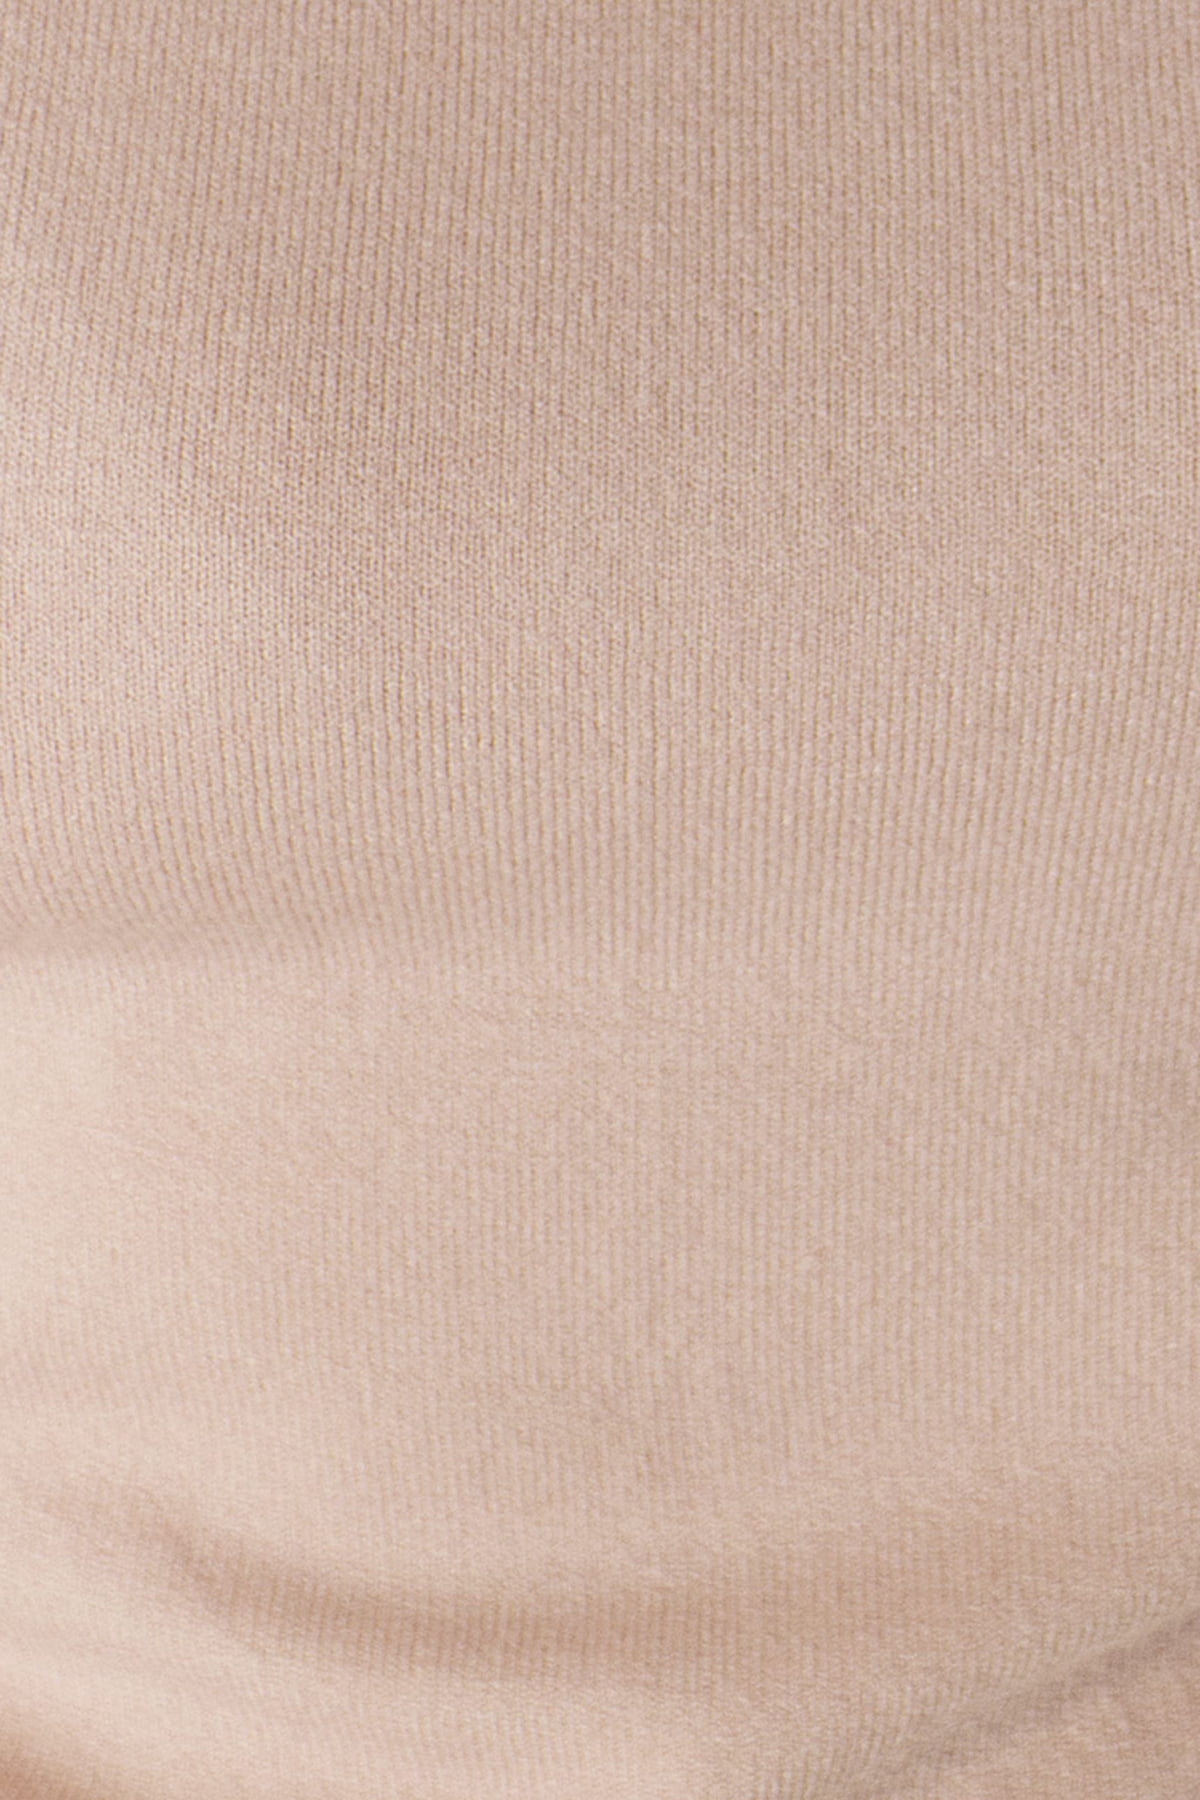 Maglione donna dolcevita in lana pettinata morbida elasticizzata collo alto manica lunga